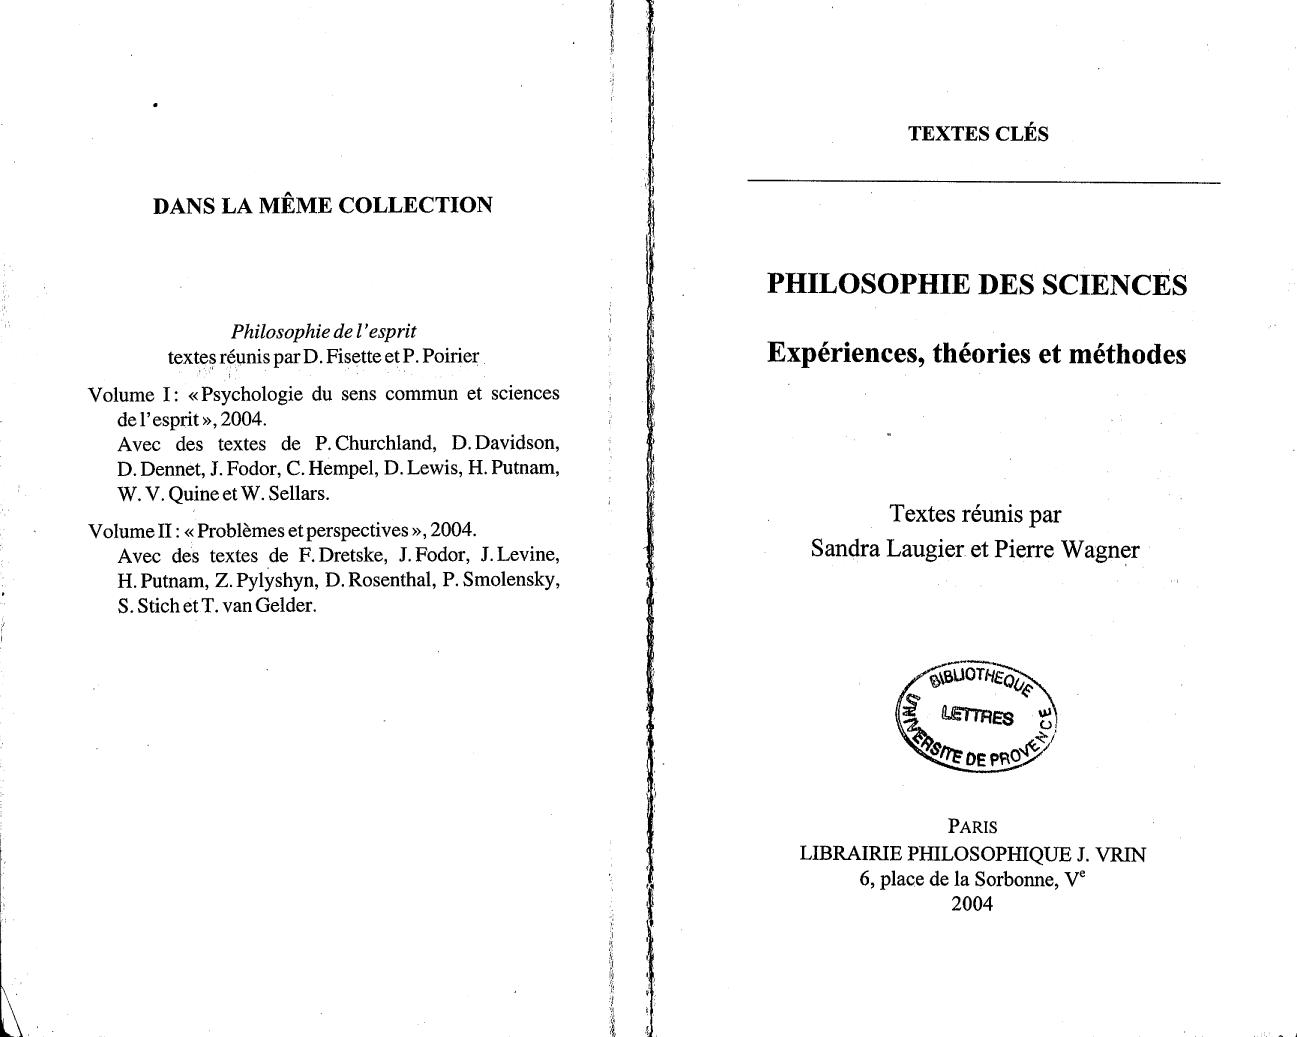 Textes clés de Philosophie des sciences, Vol. I 